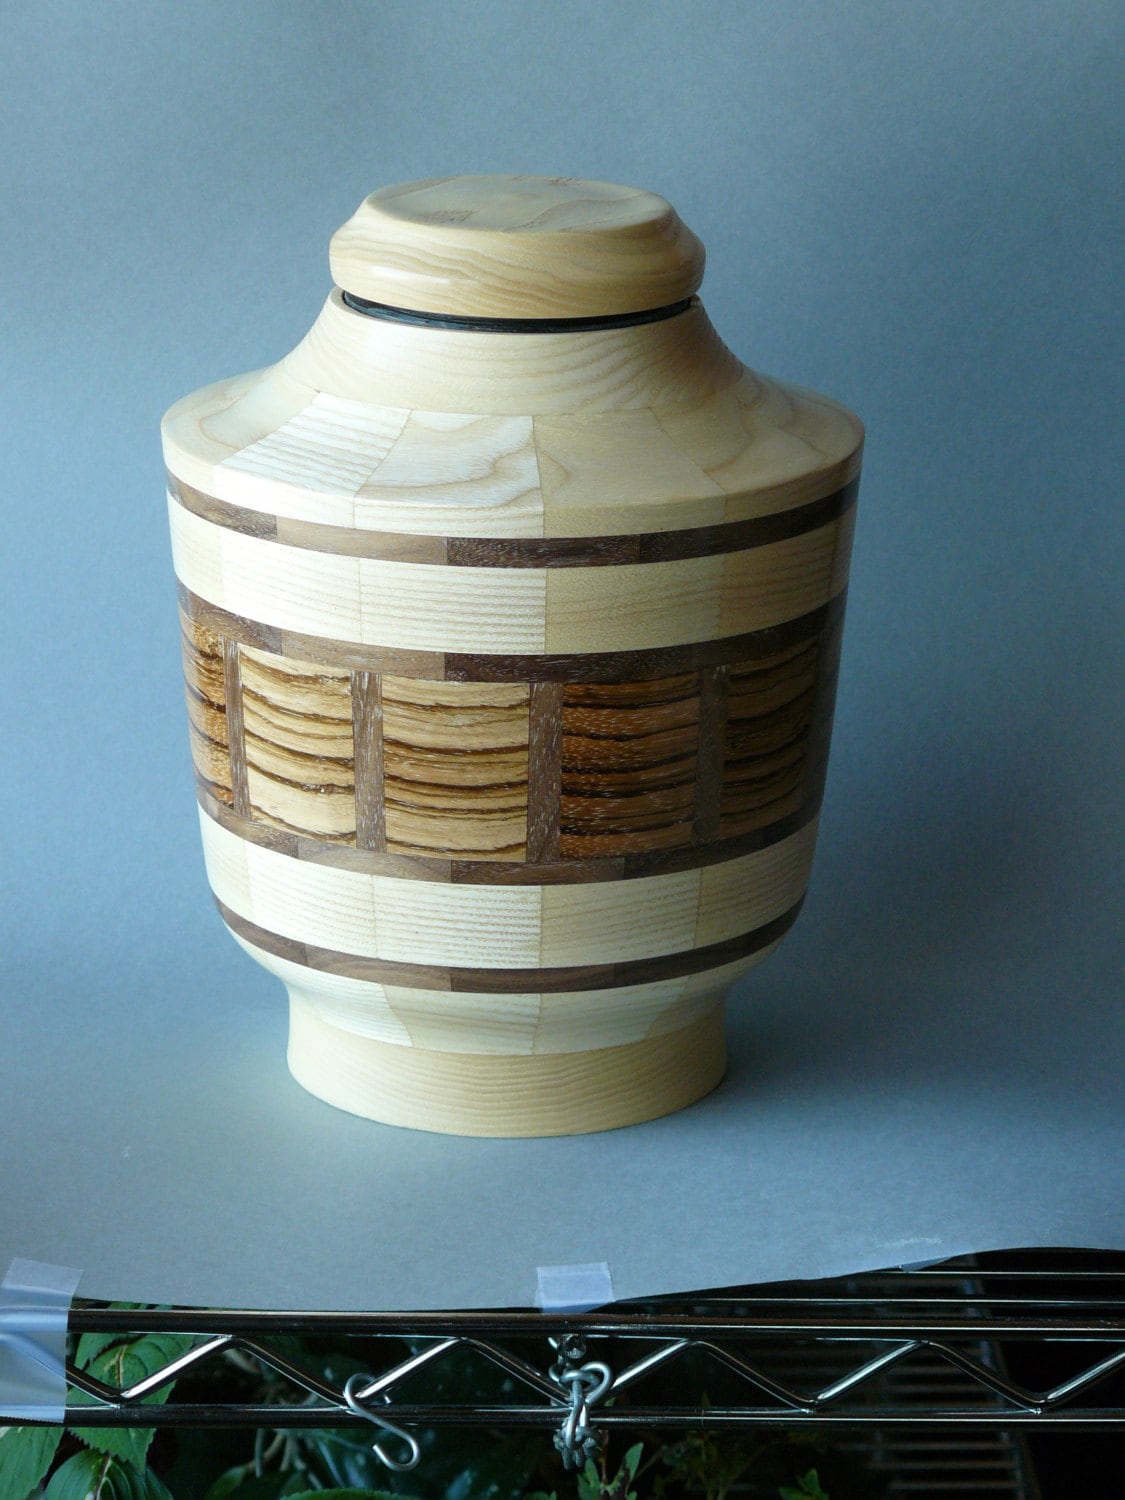 Wooden Produce Bin [BLW100-WOOD] – ALCO Designs